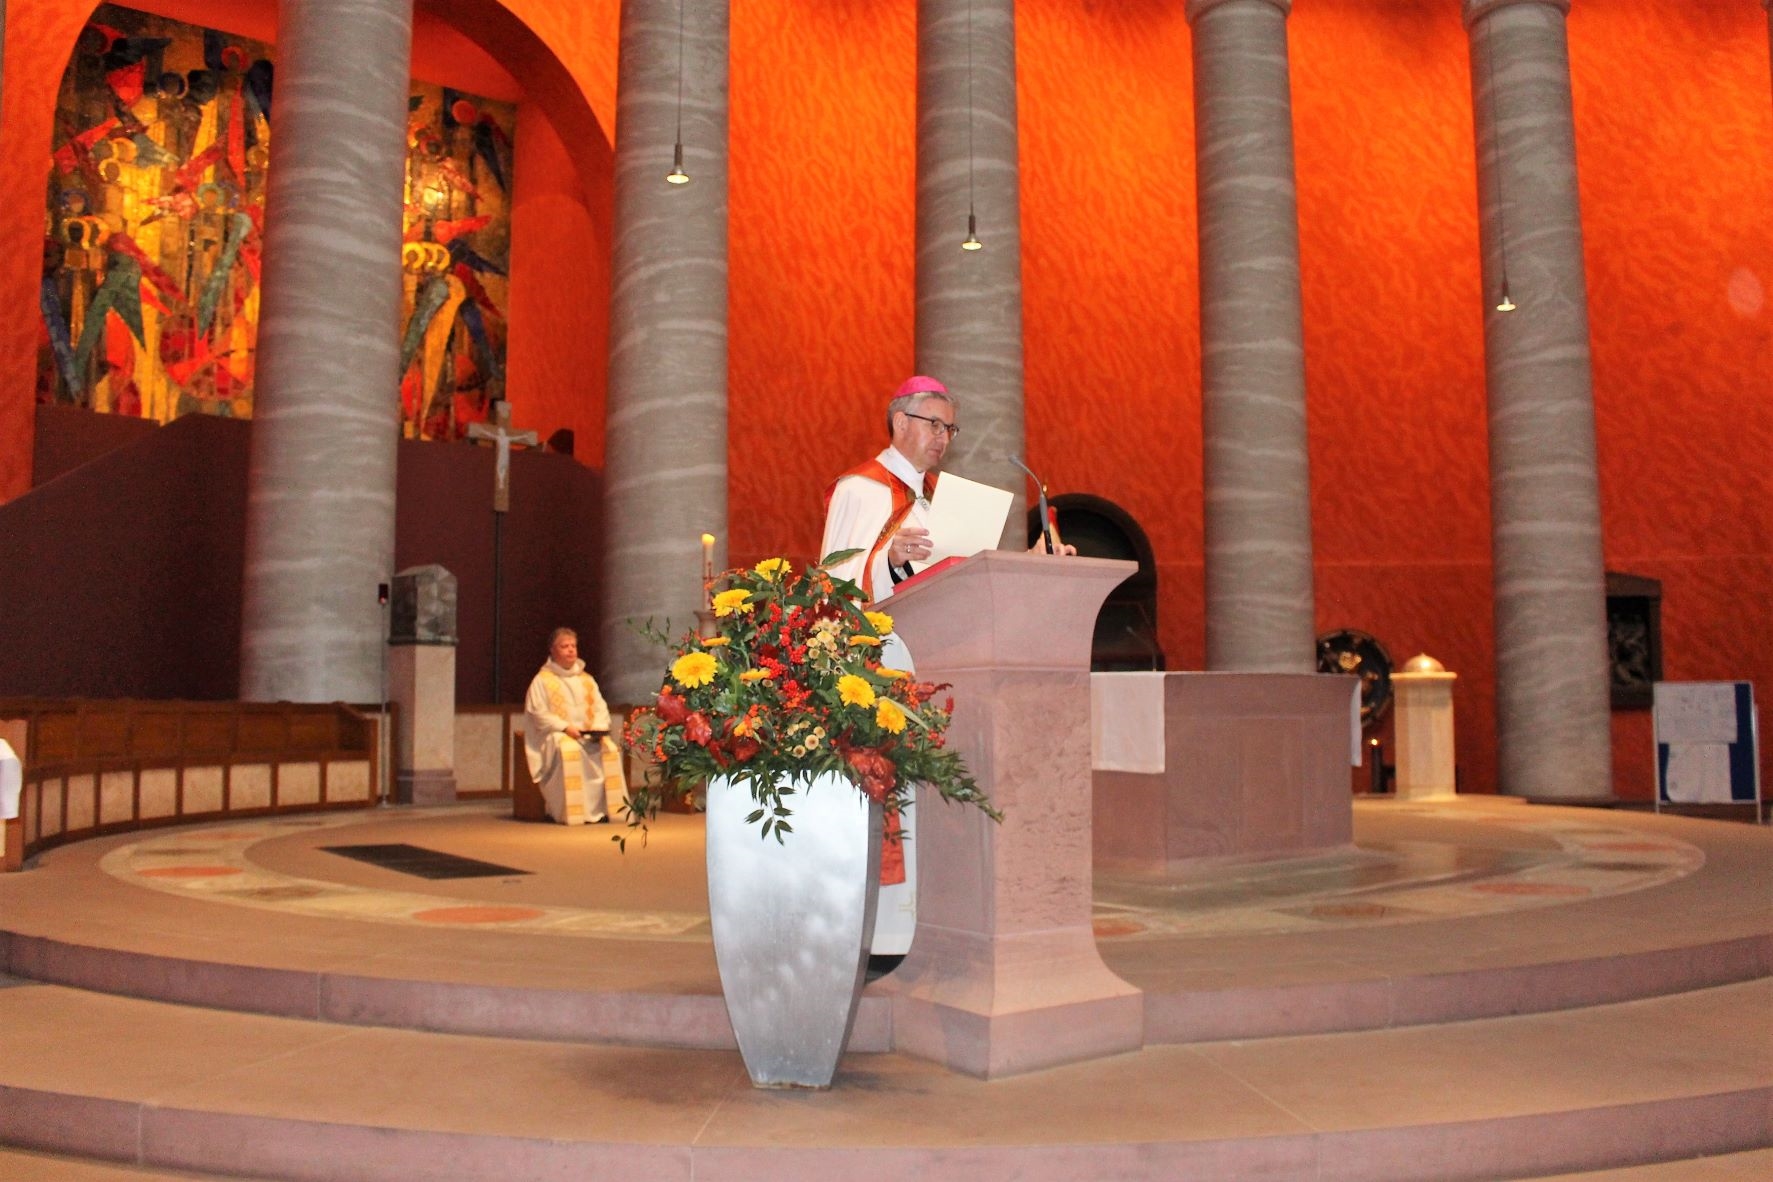 Der Bischof hält Urkunde in der Hand. (Caritasverband Darmstadt e. V.)